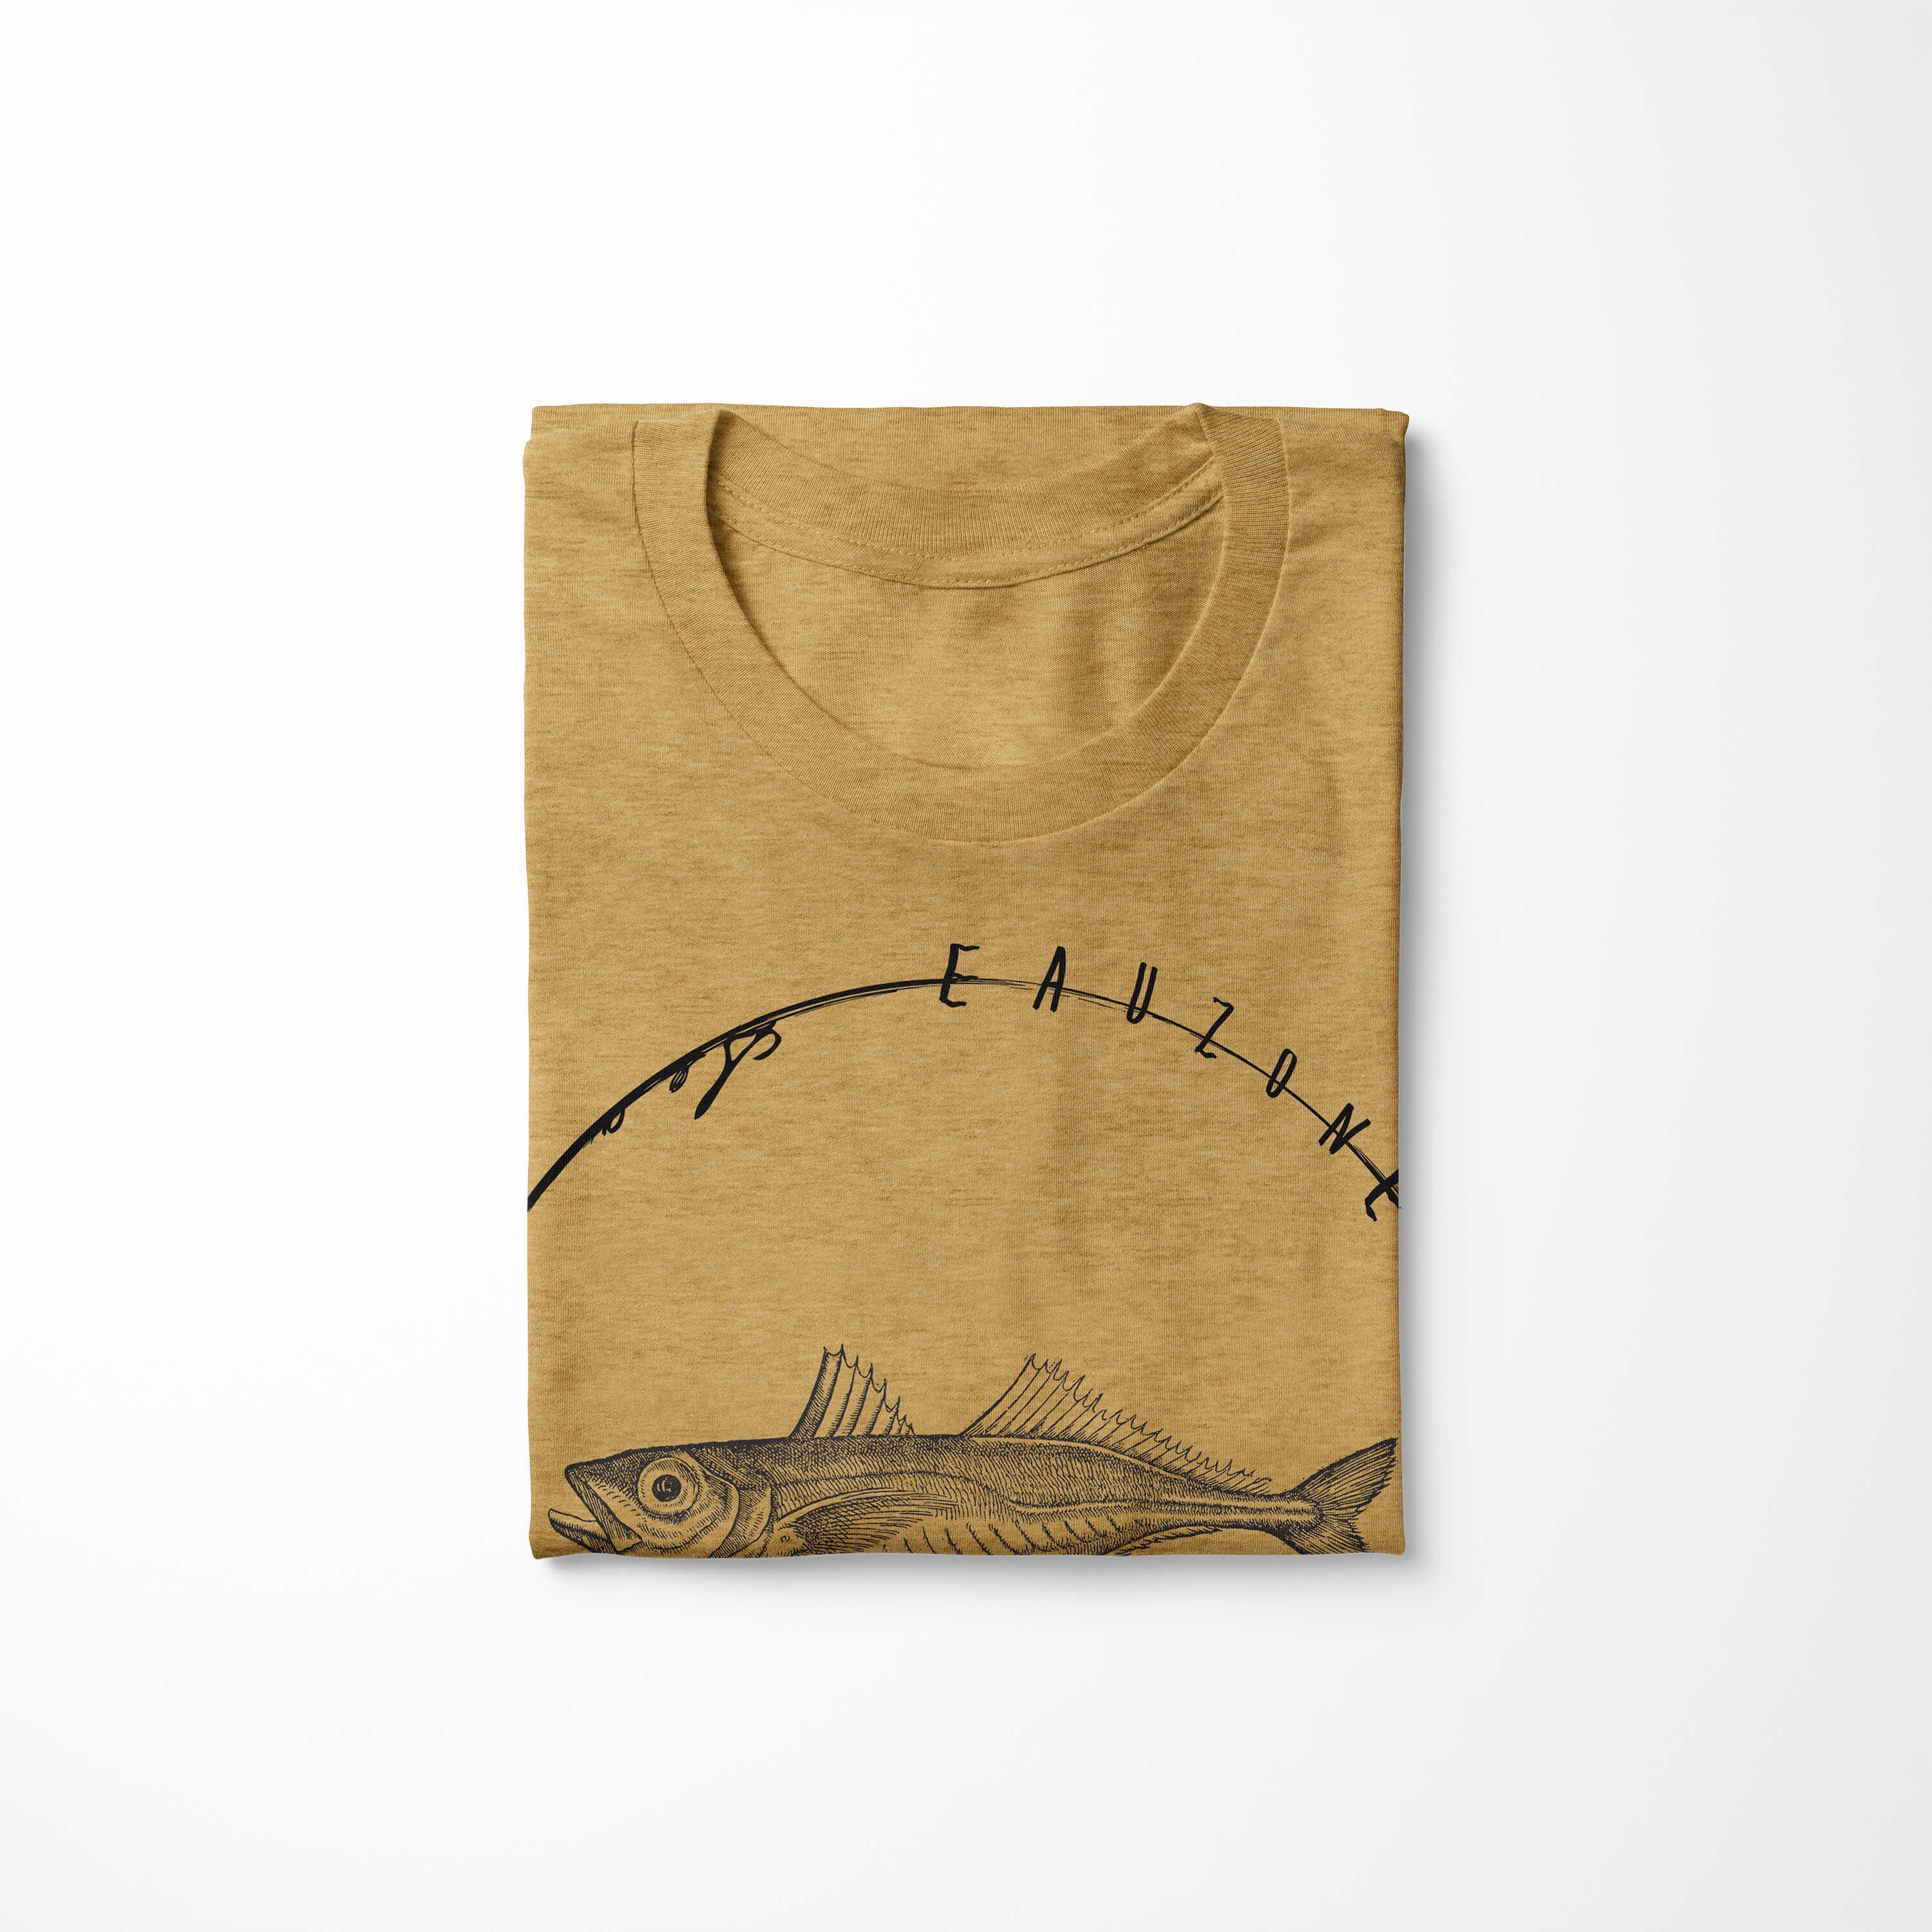 - Fische T-Shirt Art und T-Shirt Sea 058 Tiefsee Sea Creatures, / Sinus Gold Serie: Struktur sportlicher feine Antique Schnitt